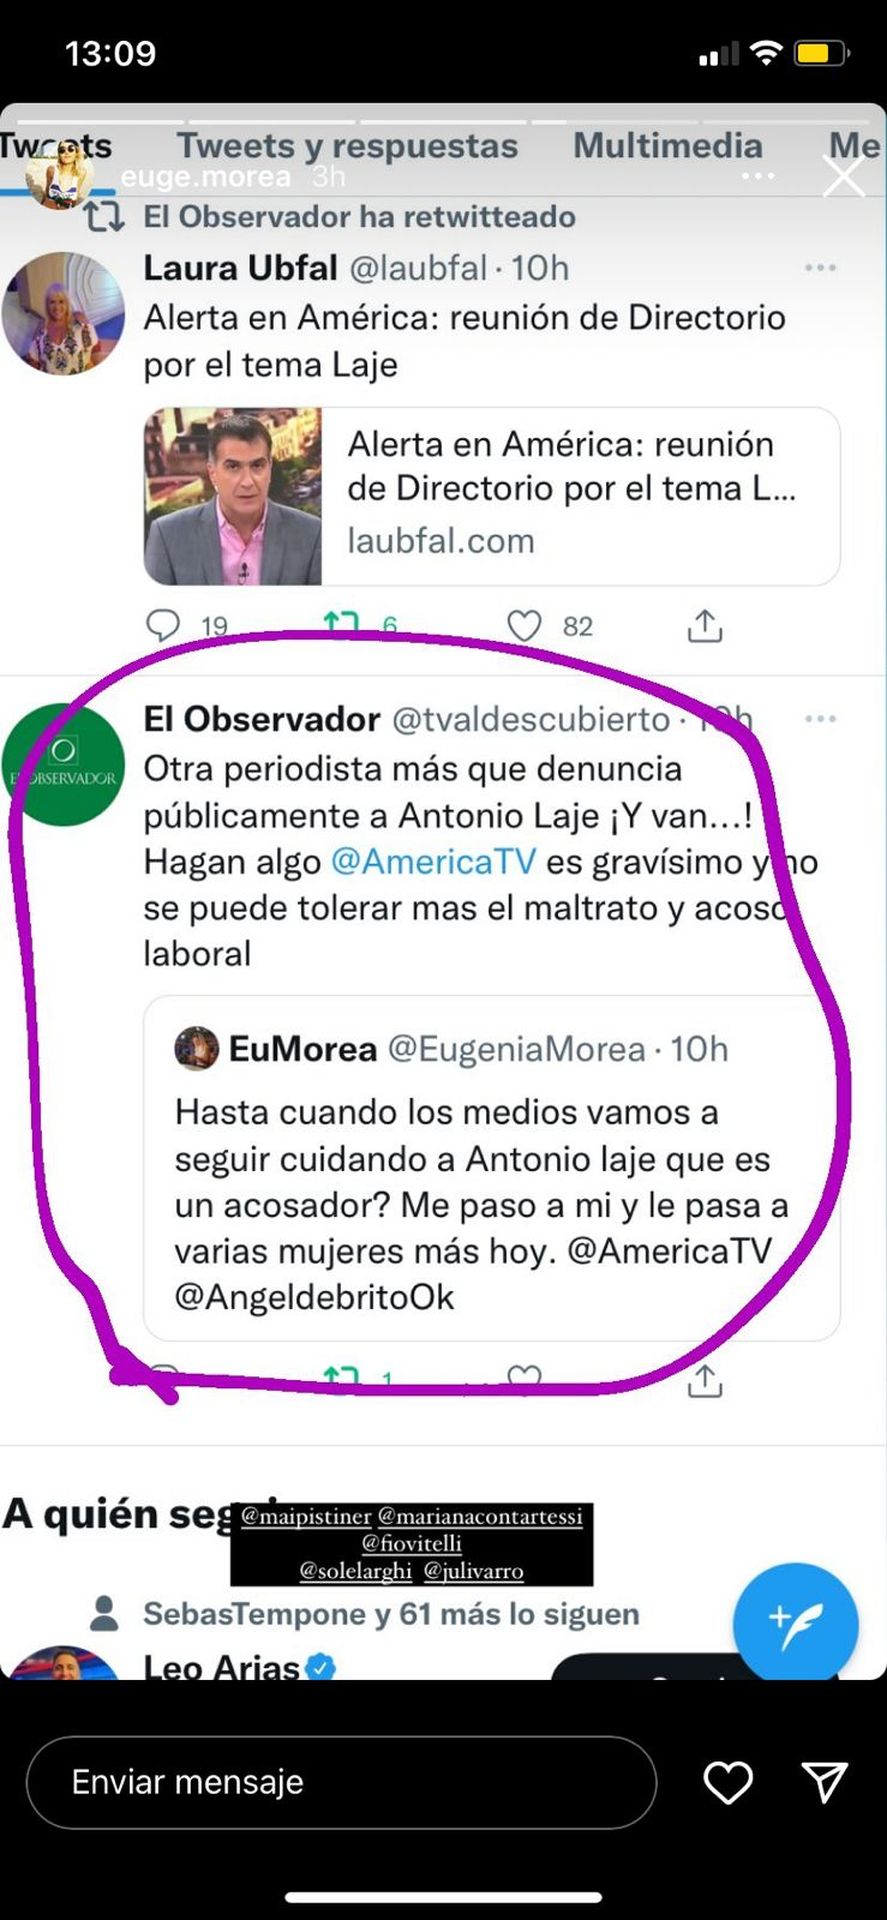 Otra captura de los dichos de la periodista Eugenia Morea hacia Antonio Laje y el maltrato y acoso que asegura haber recibido ella y otras mujeres en el canal América 